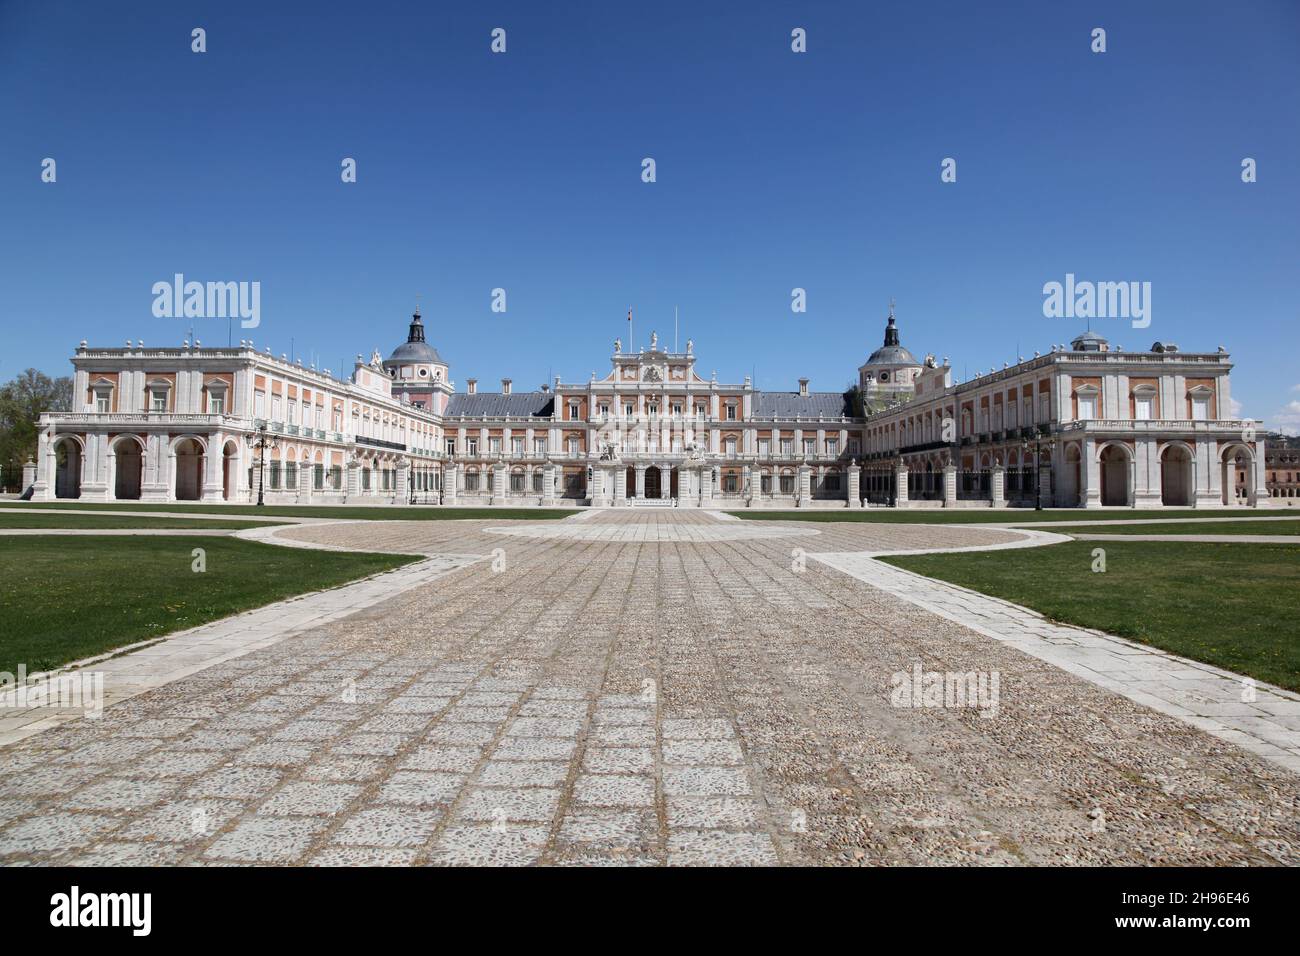 Le Palais royal espagnol d'Aranjuez.Aranjuez Espagne.Le Palais et ses jardins environnants sont classés au patrimoine mondial de l'UNESCO. Banque D'Images